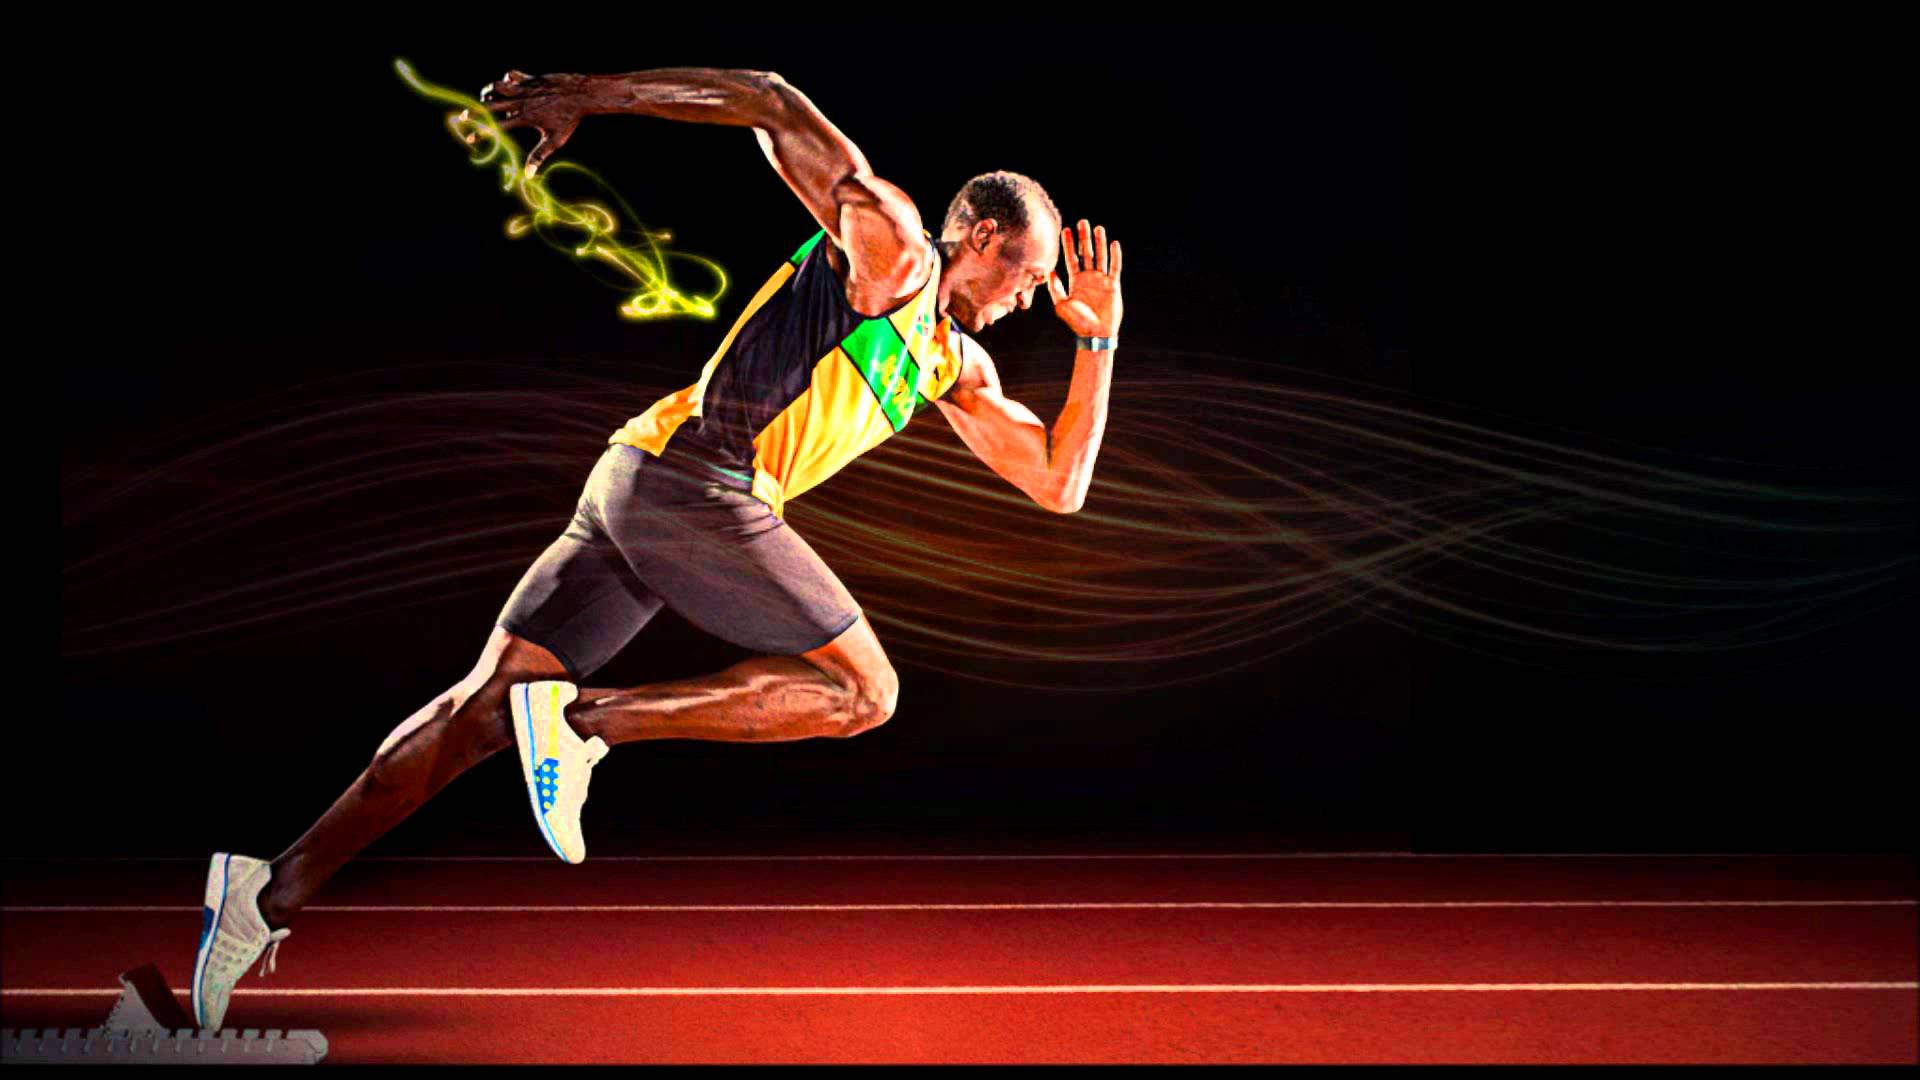 image For > Usain Bolt Running Wallpaper